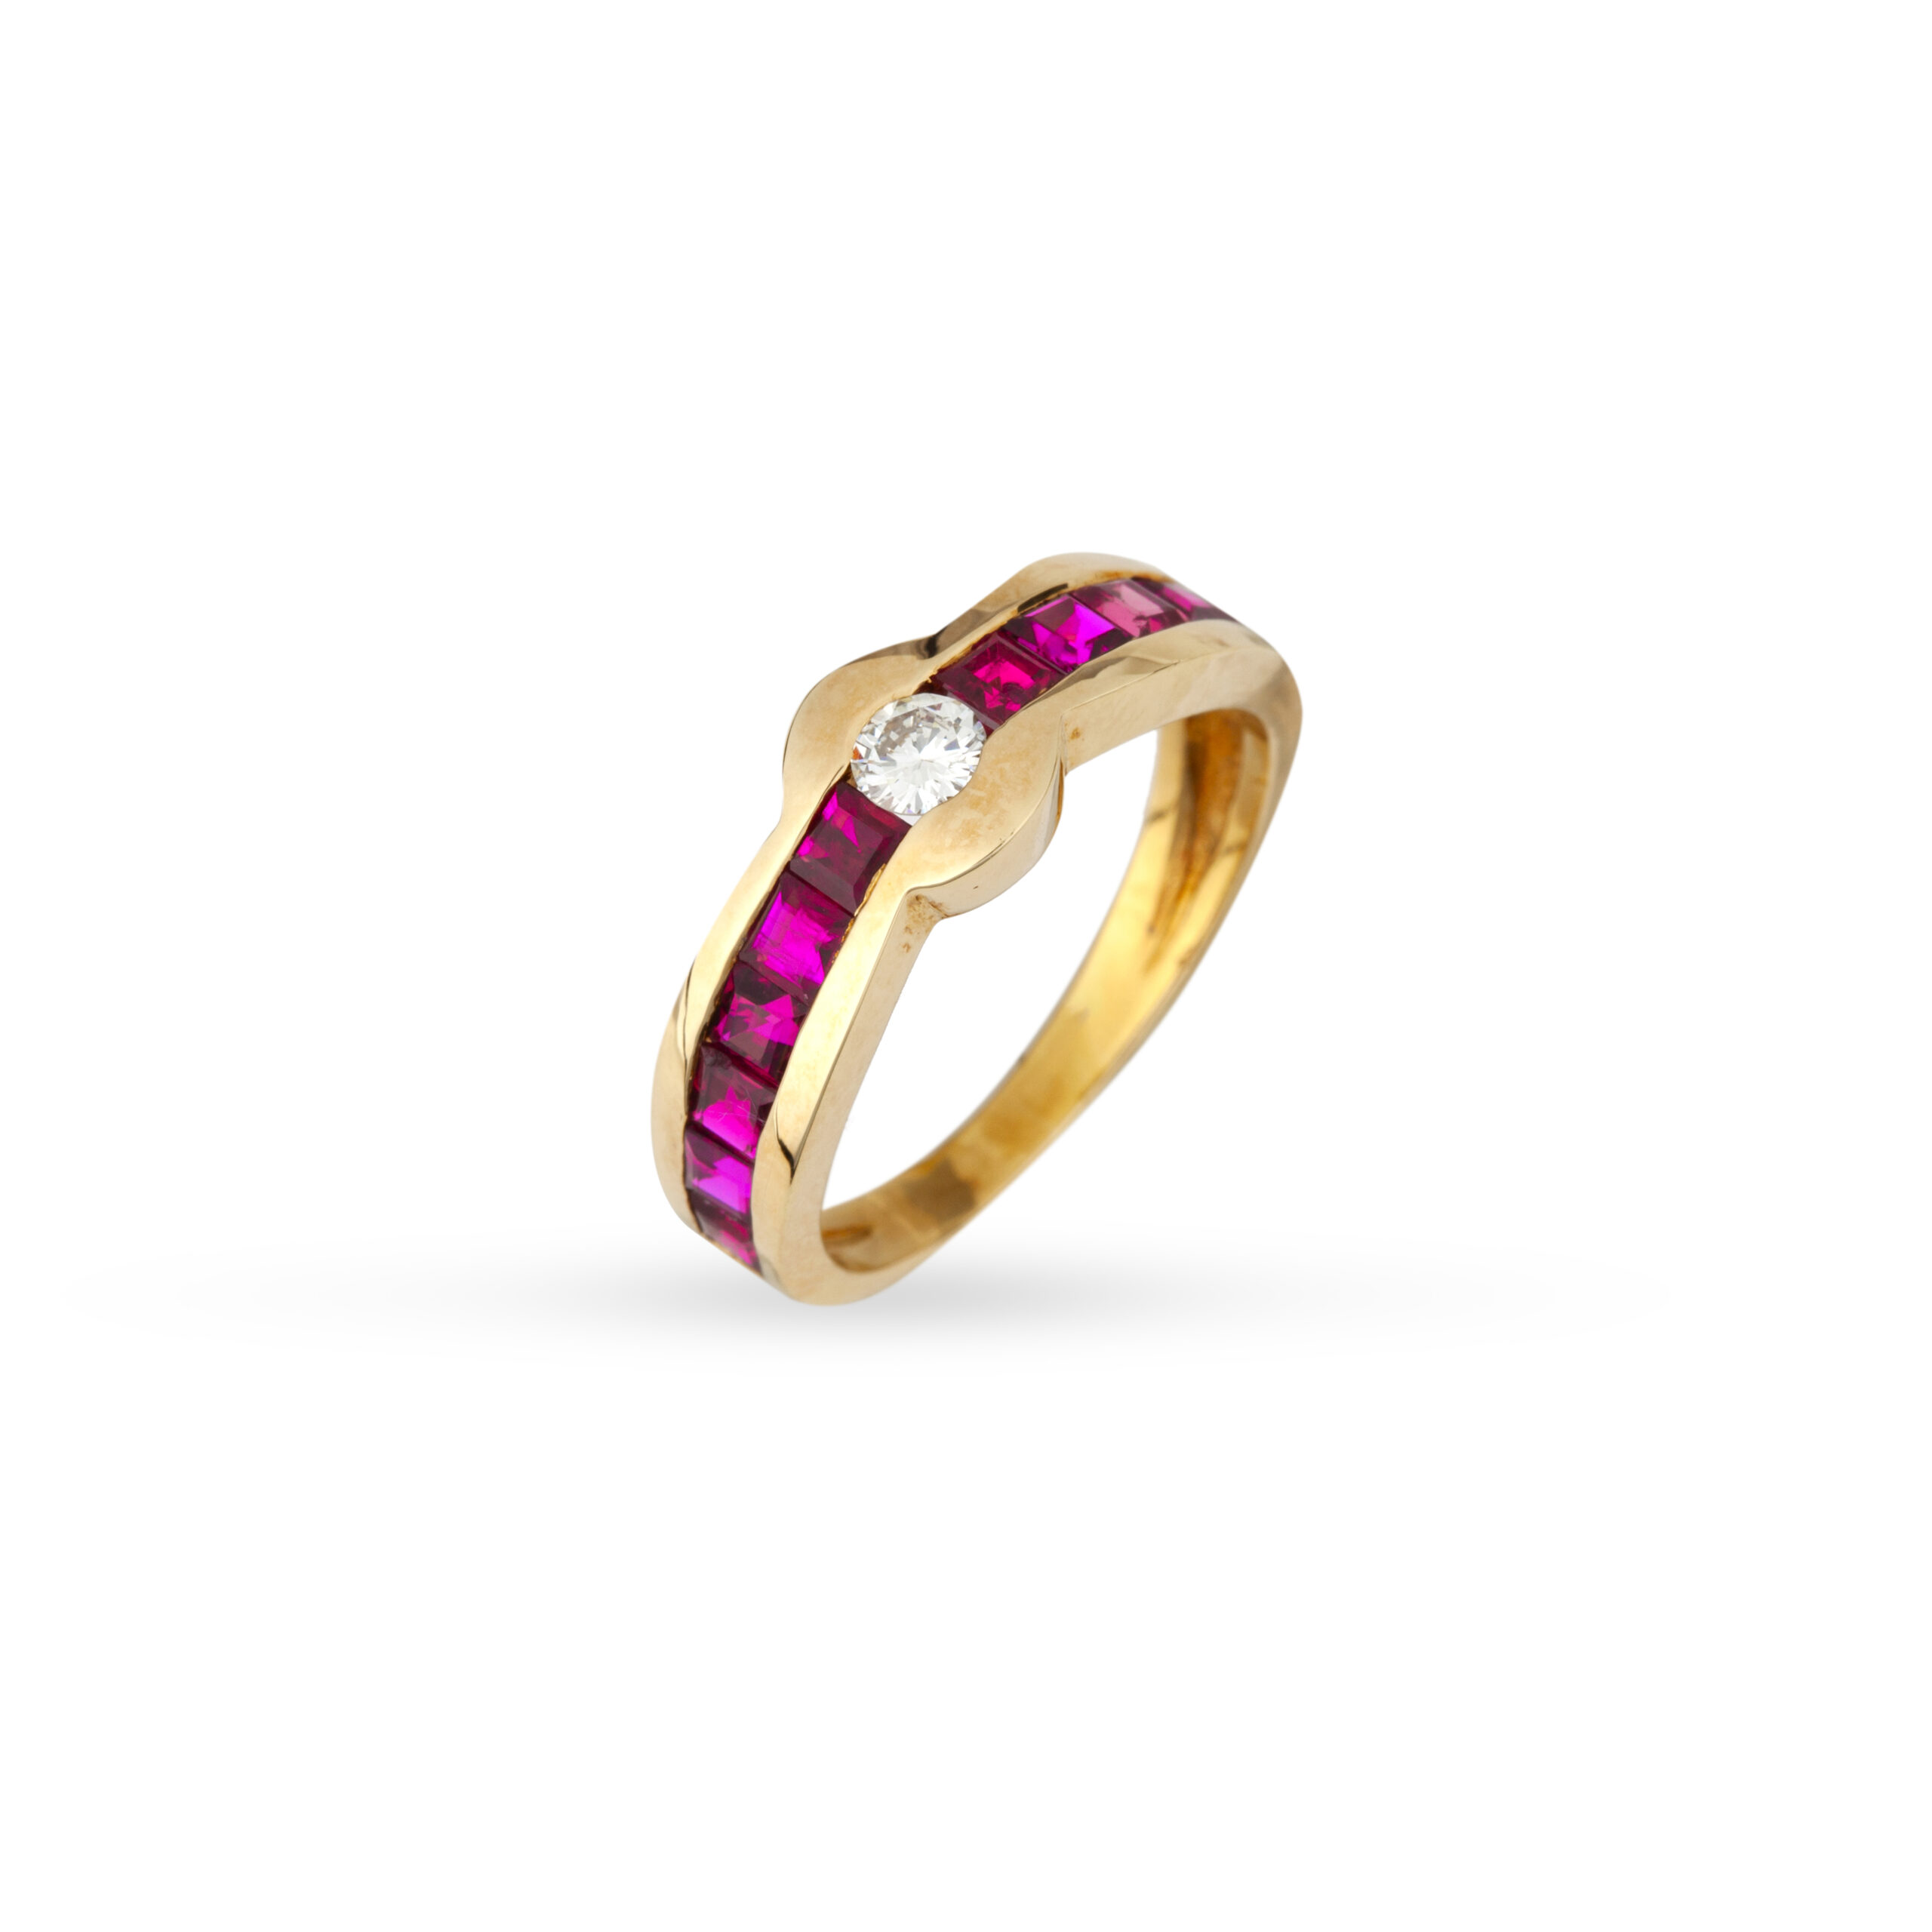 Μοντέρνο δαχτυλίδι με ένα στρογγυλό διαμάντι μπριγιάν και εξαιρετικής ποιότητας ρουμπίνι